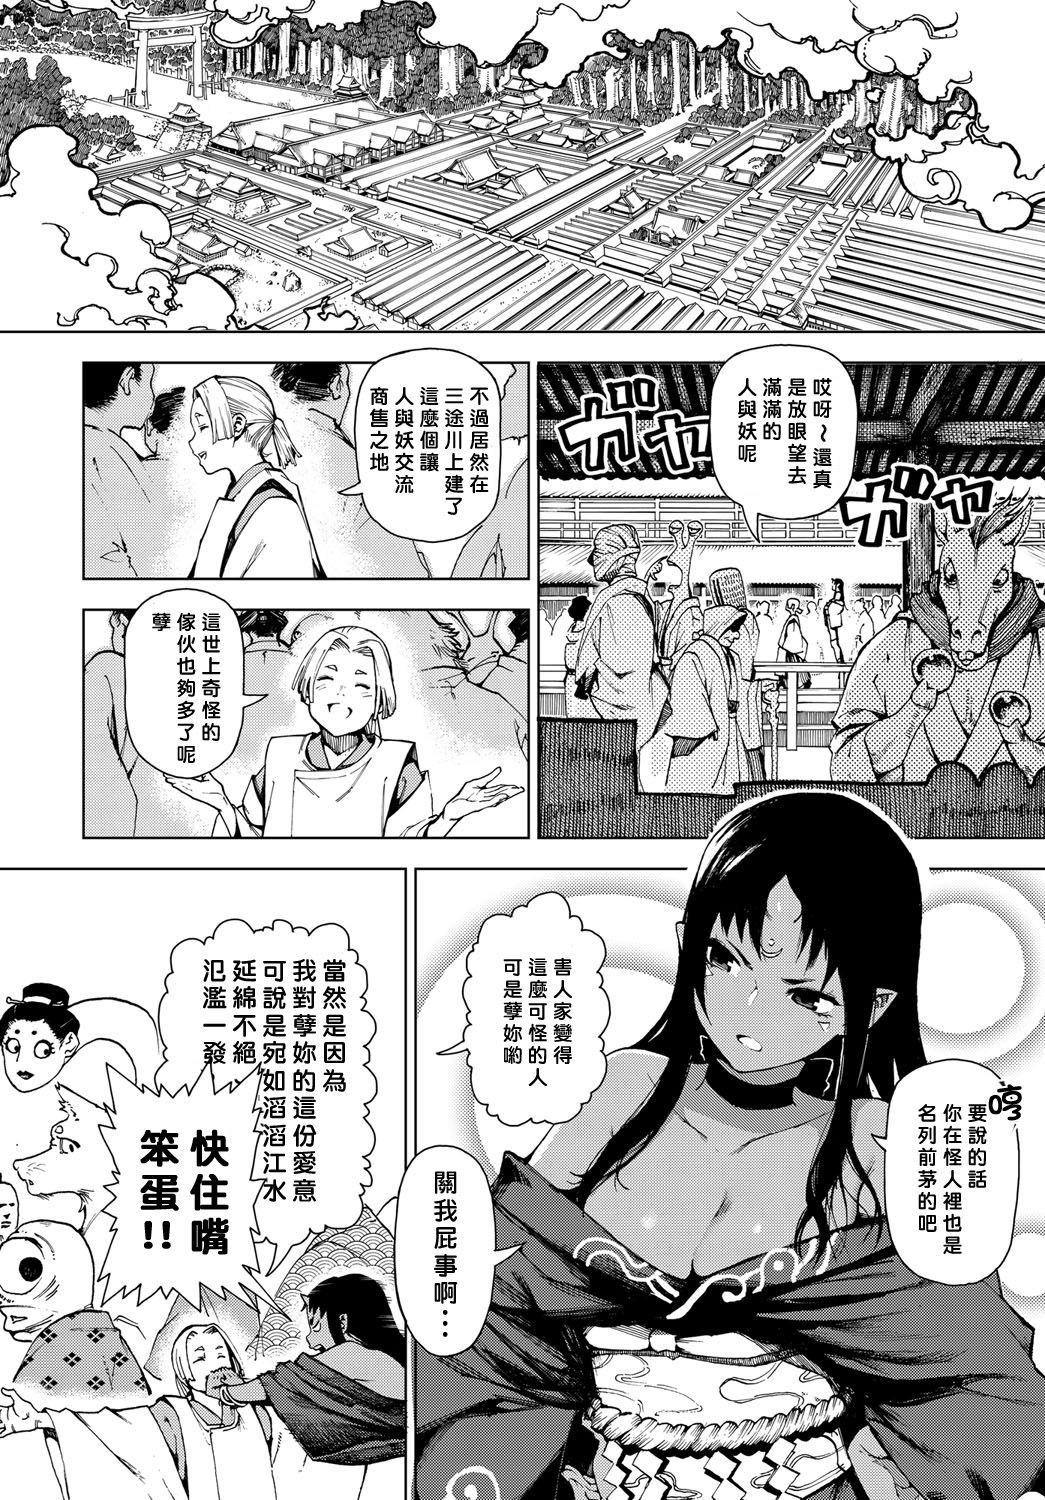 Erotica Izayoi no Tsuki | Waning Moon Free Teenage Porn - Page 2